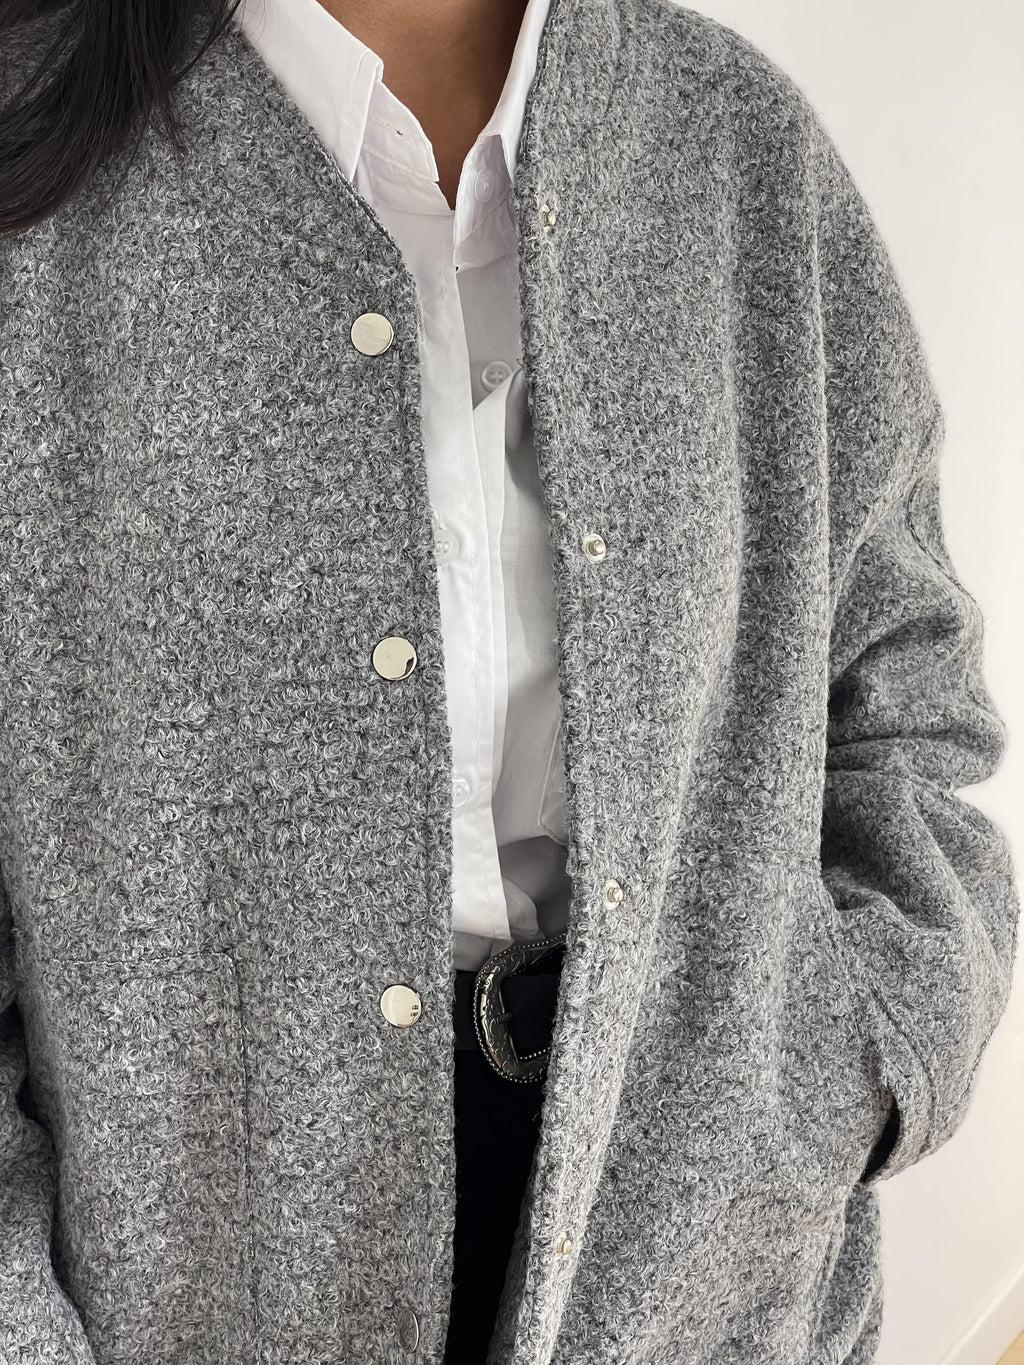 Veste en tweed grise pour femme avec boutons dorés et col chemisier blanc